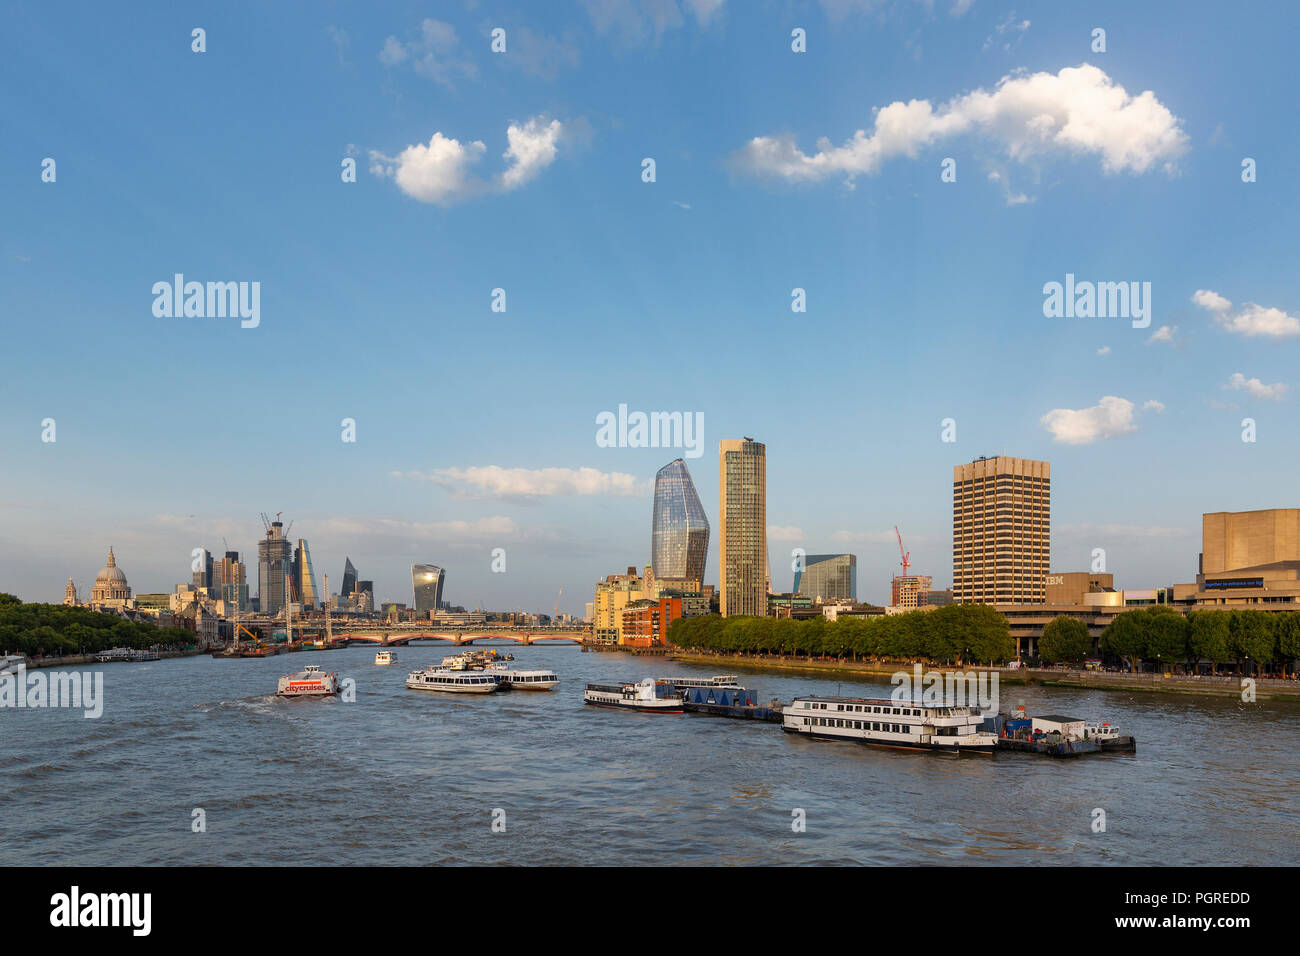 Londres, UK - 6 août 2018 : bateaux sur la Tamise par Waterloo Bridge avec le Southbank centre, Blackfriars Bridge, St Paul's et skyscrap ville Banque D'Images